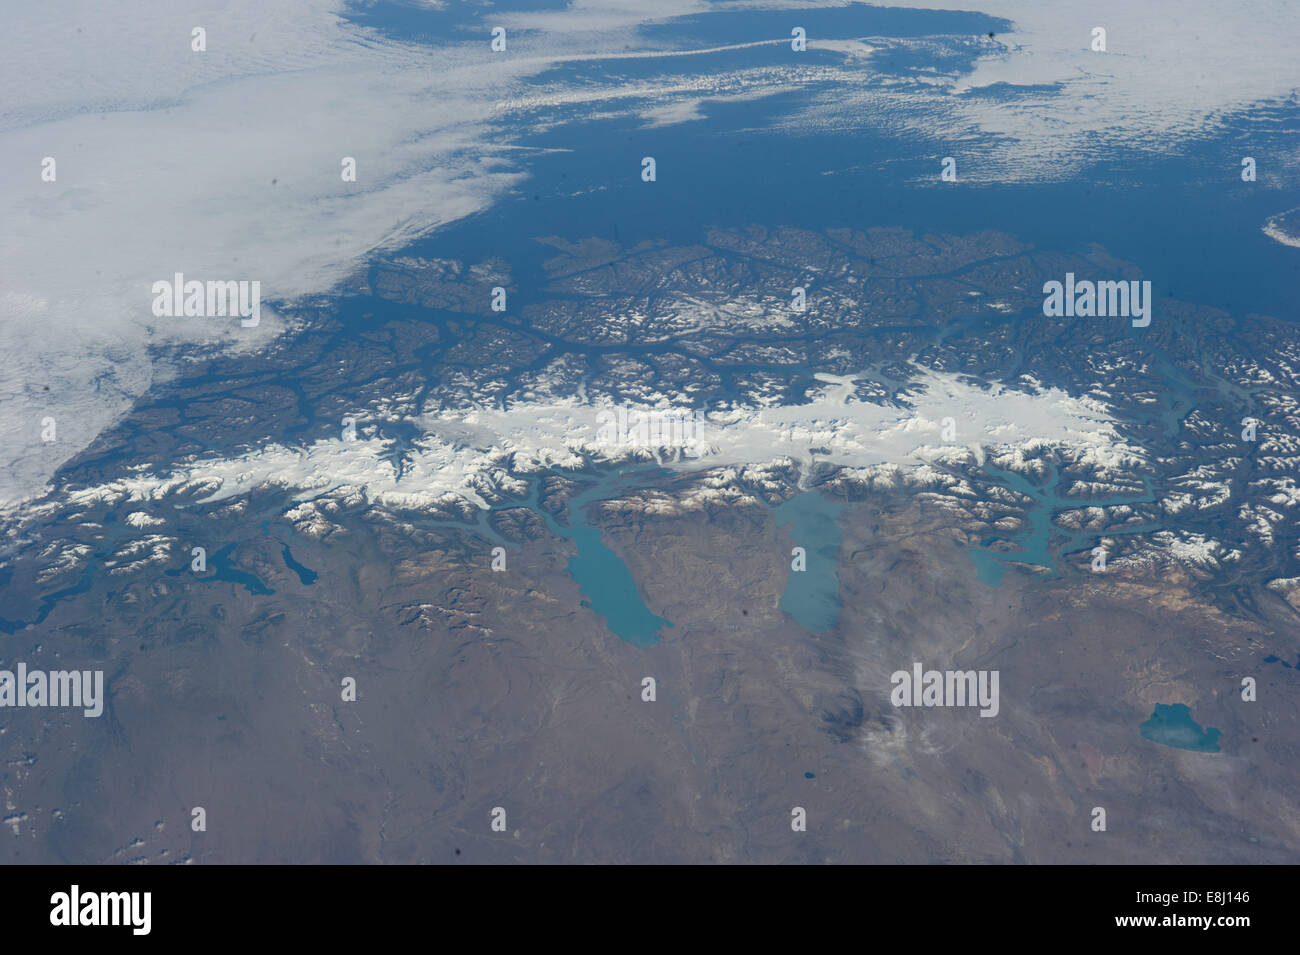 Questo grandioso panorama della Patagonia Meridionale Icefield (centro) è stata raffigurata da una spedizione 38 membro di equipaggio sulla International Foto Stock